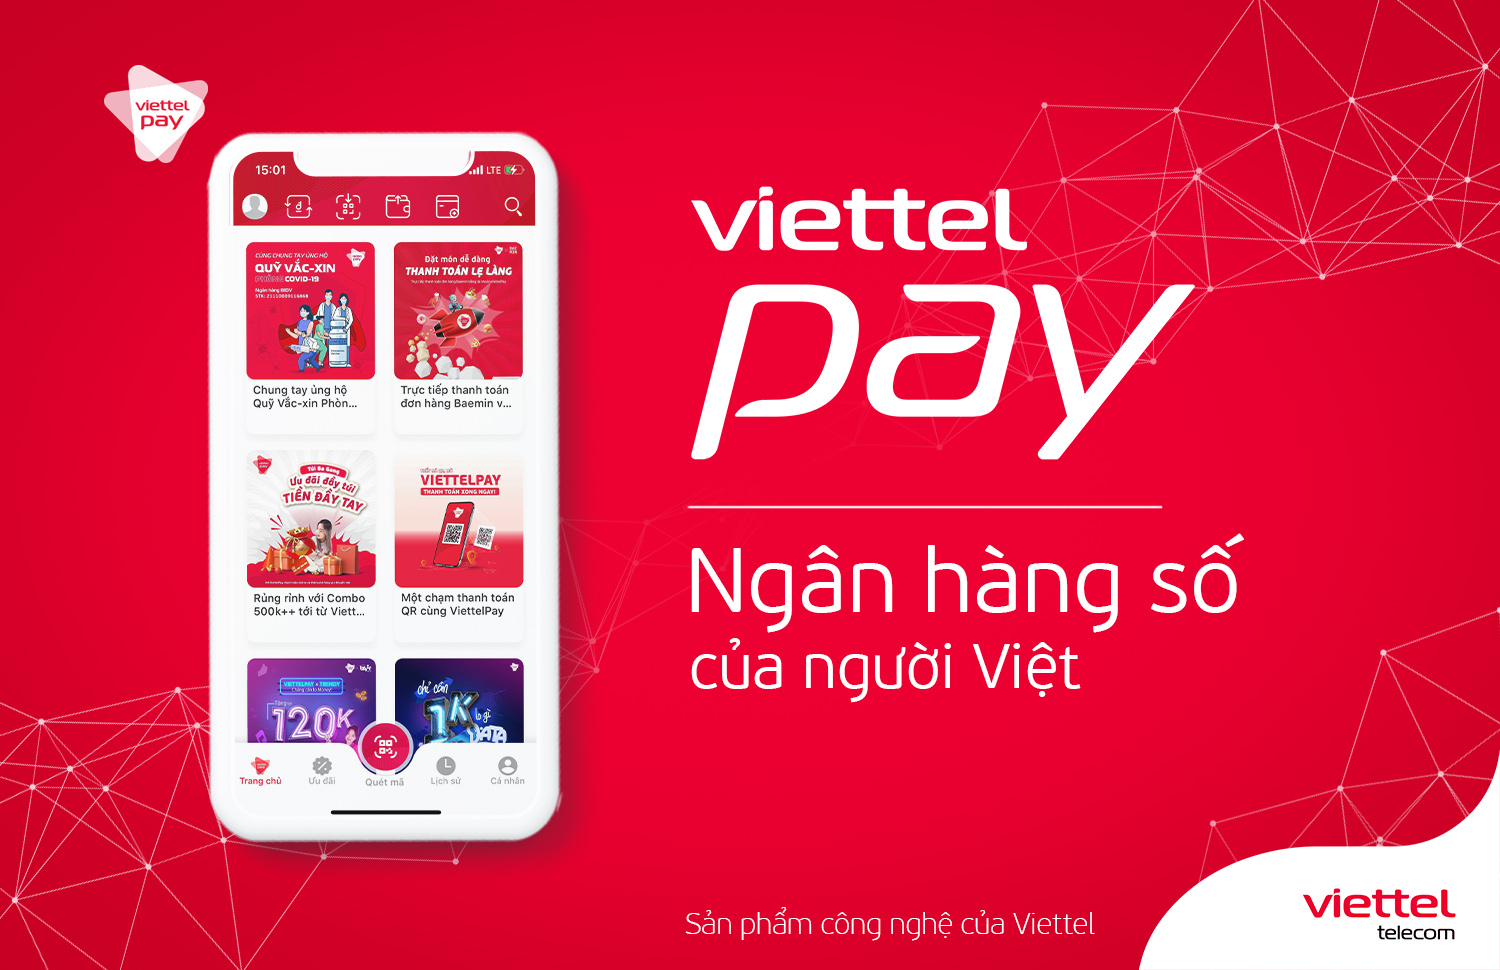 Tải App ViettelPay - Trải nghiệm ứng dụng ngân hàng số tiện ích